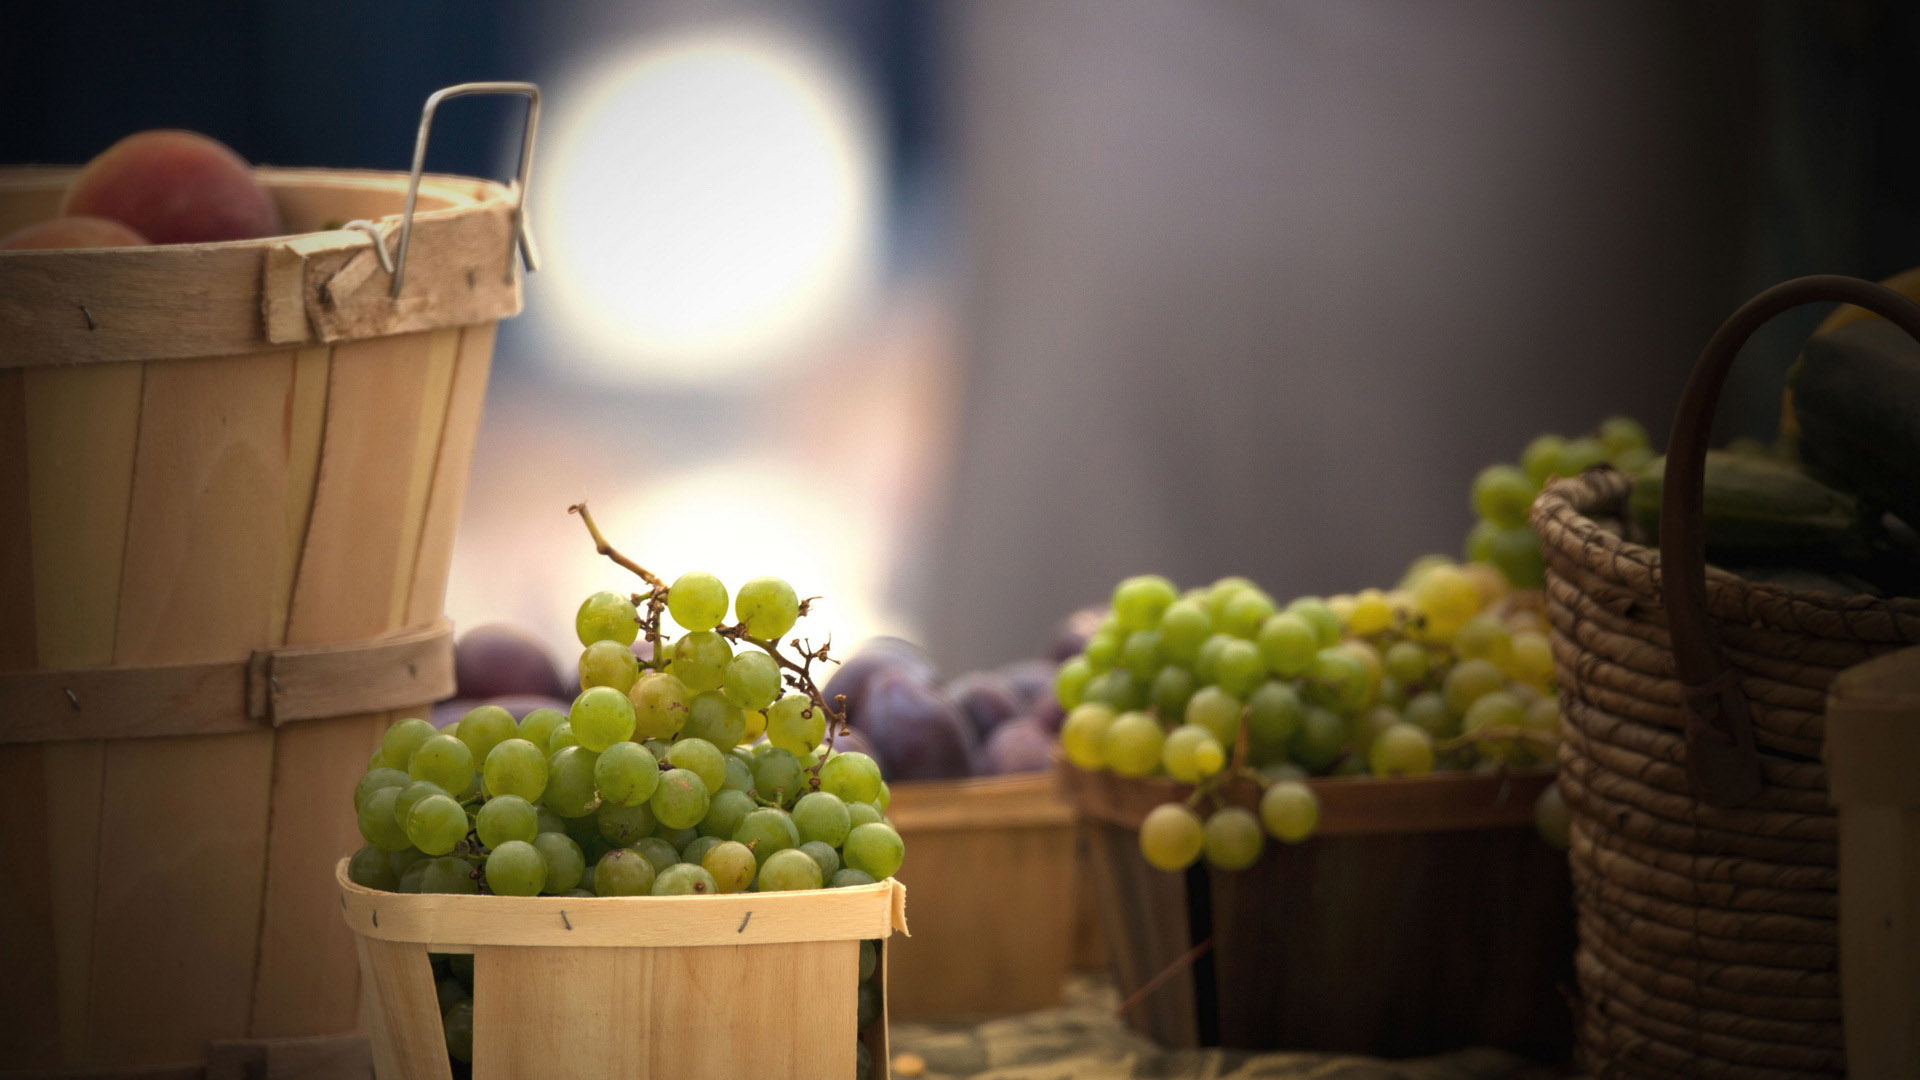 Little grape photo desktop background picture